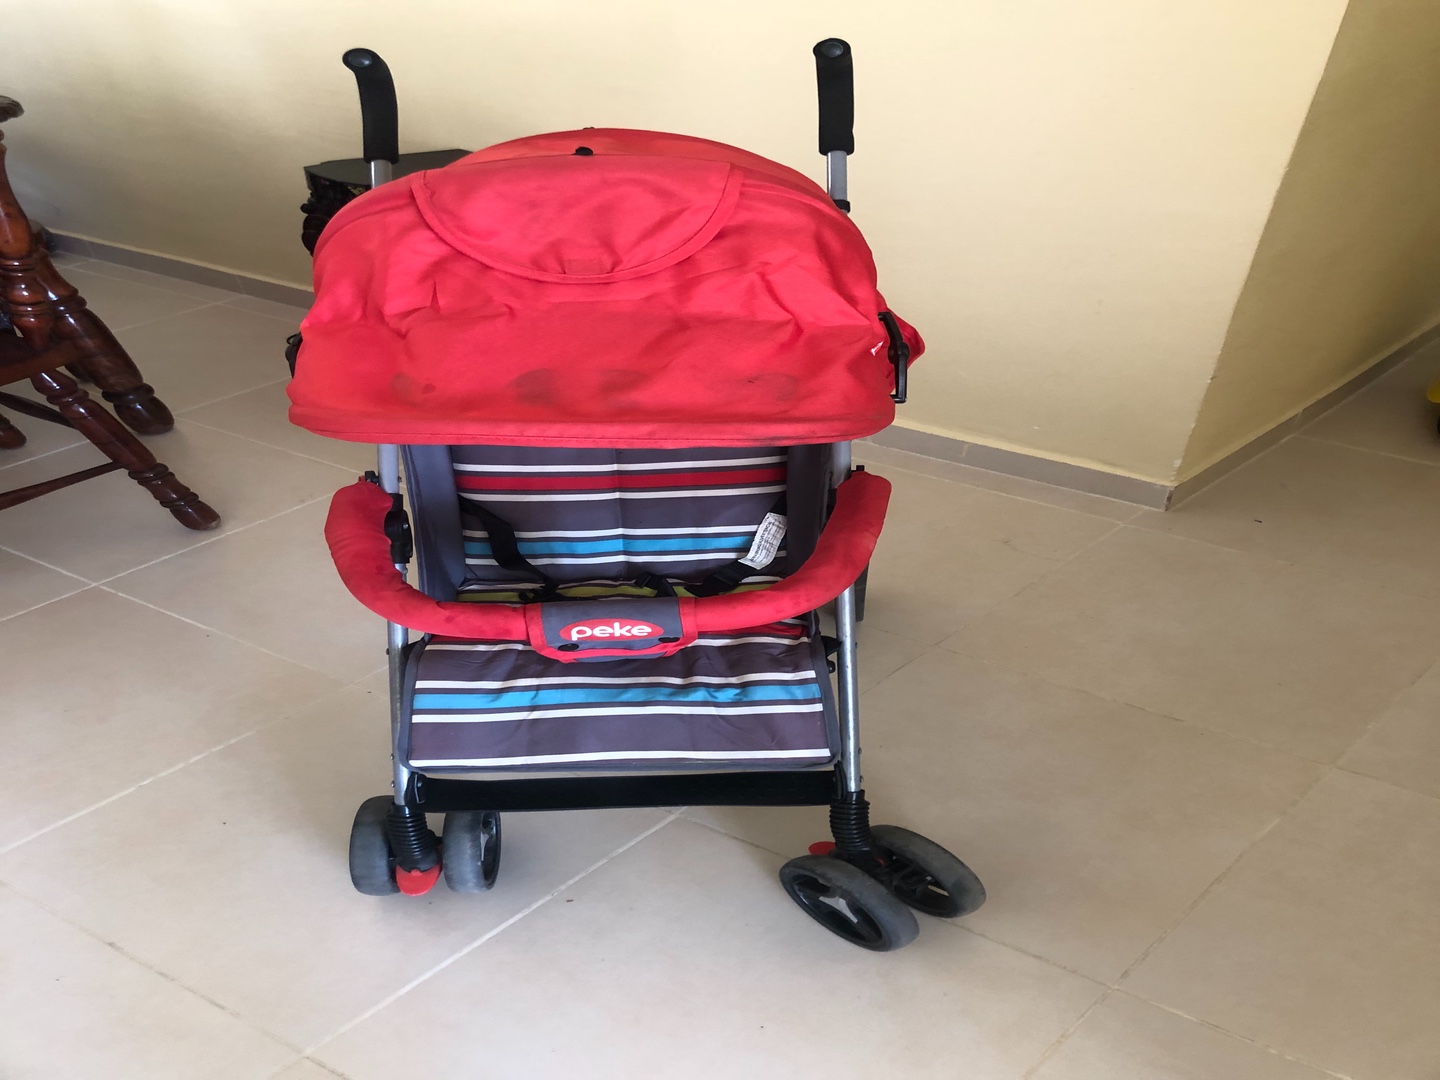 coches y sillas - Coche para bebe marca peke